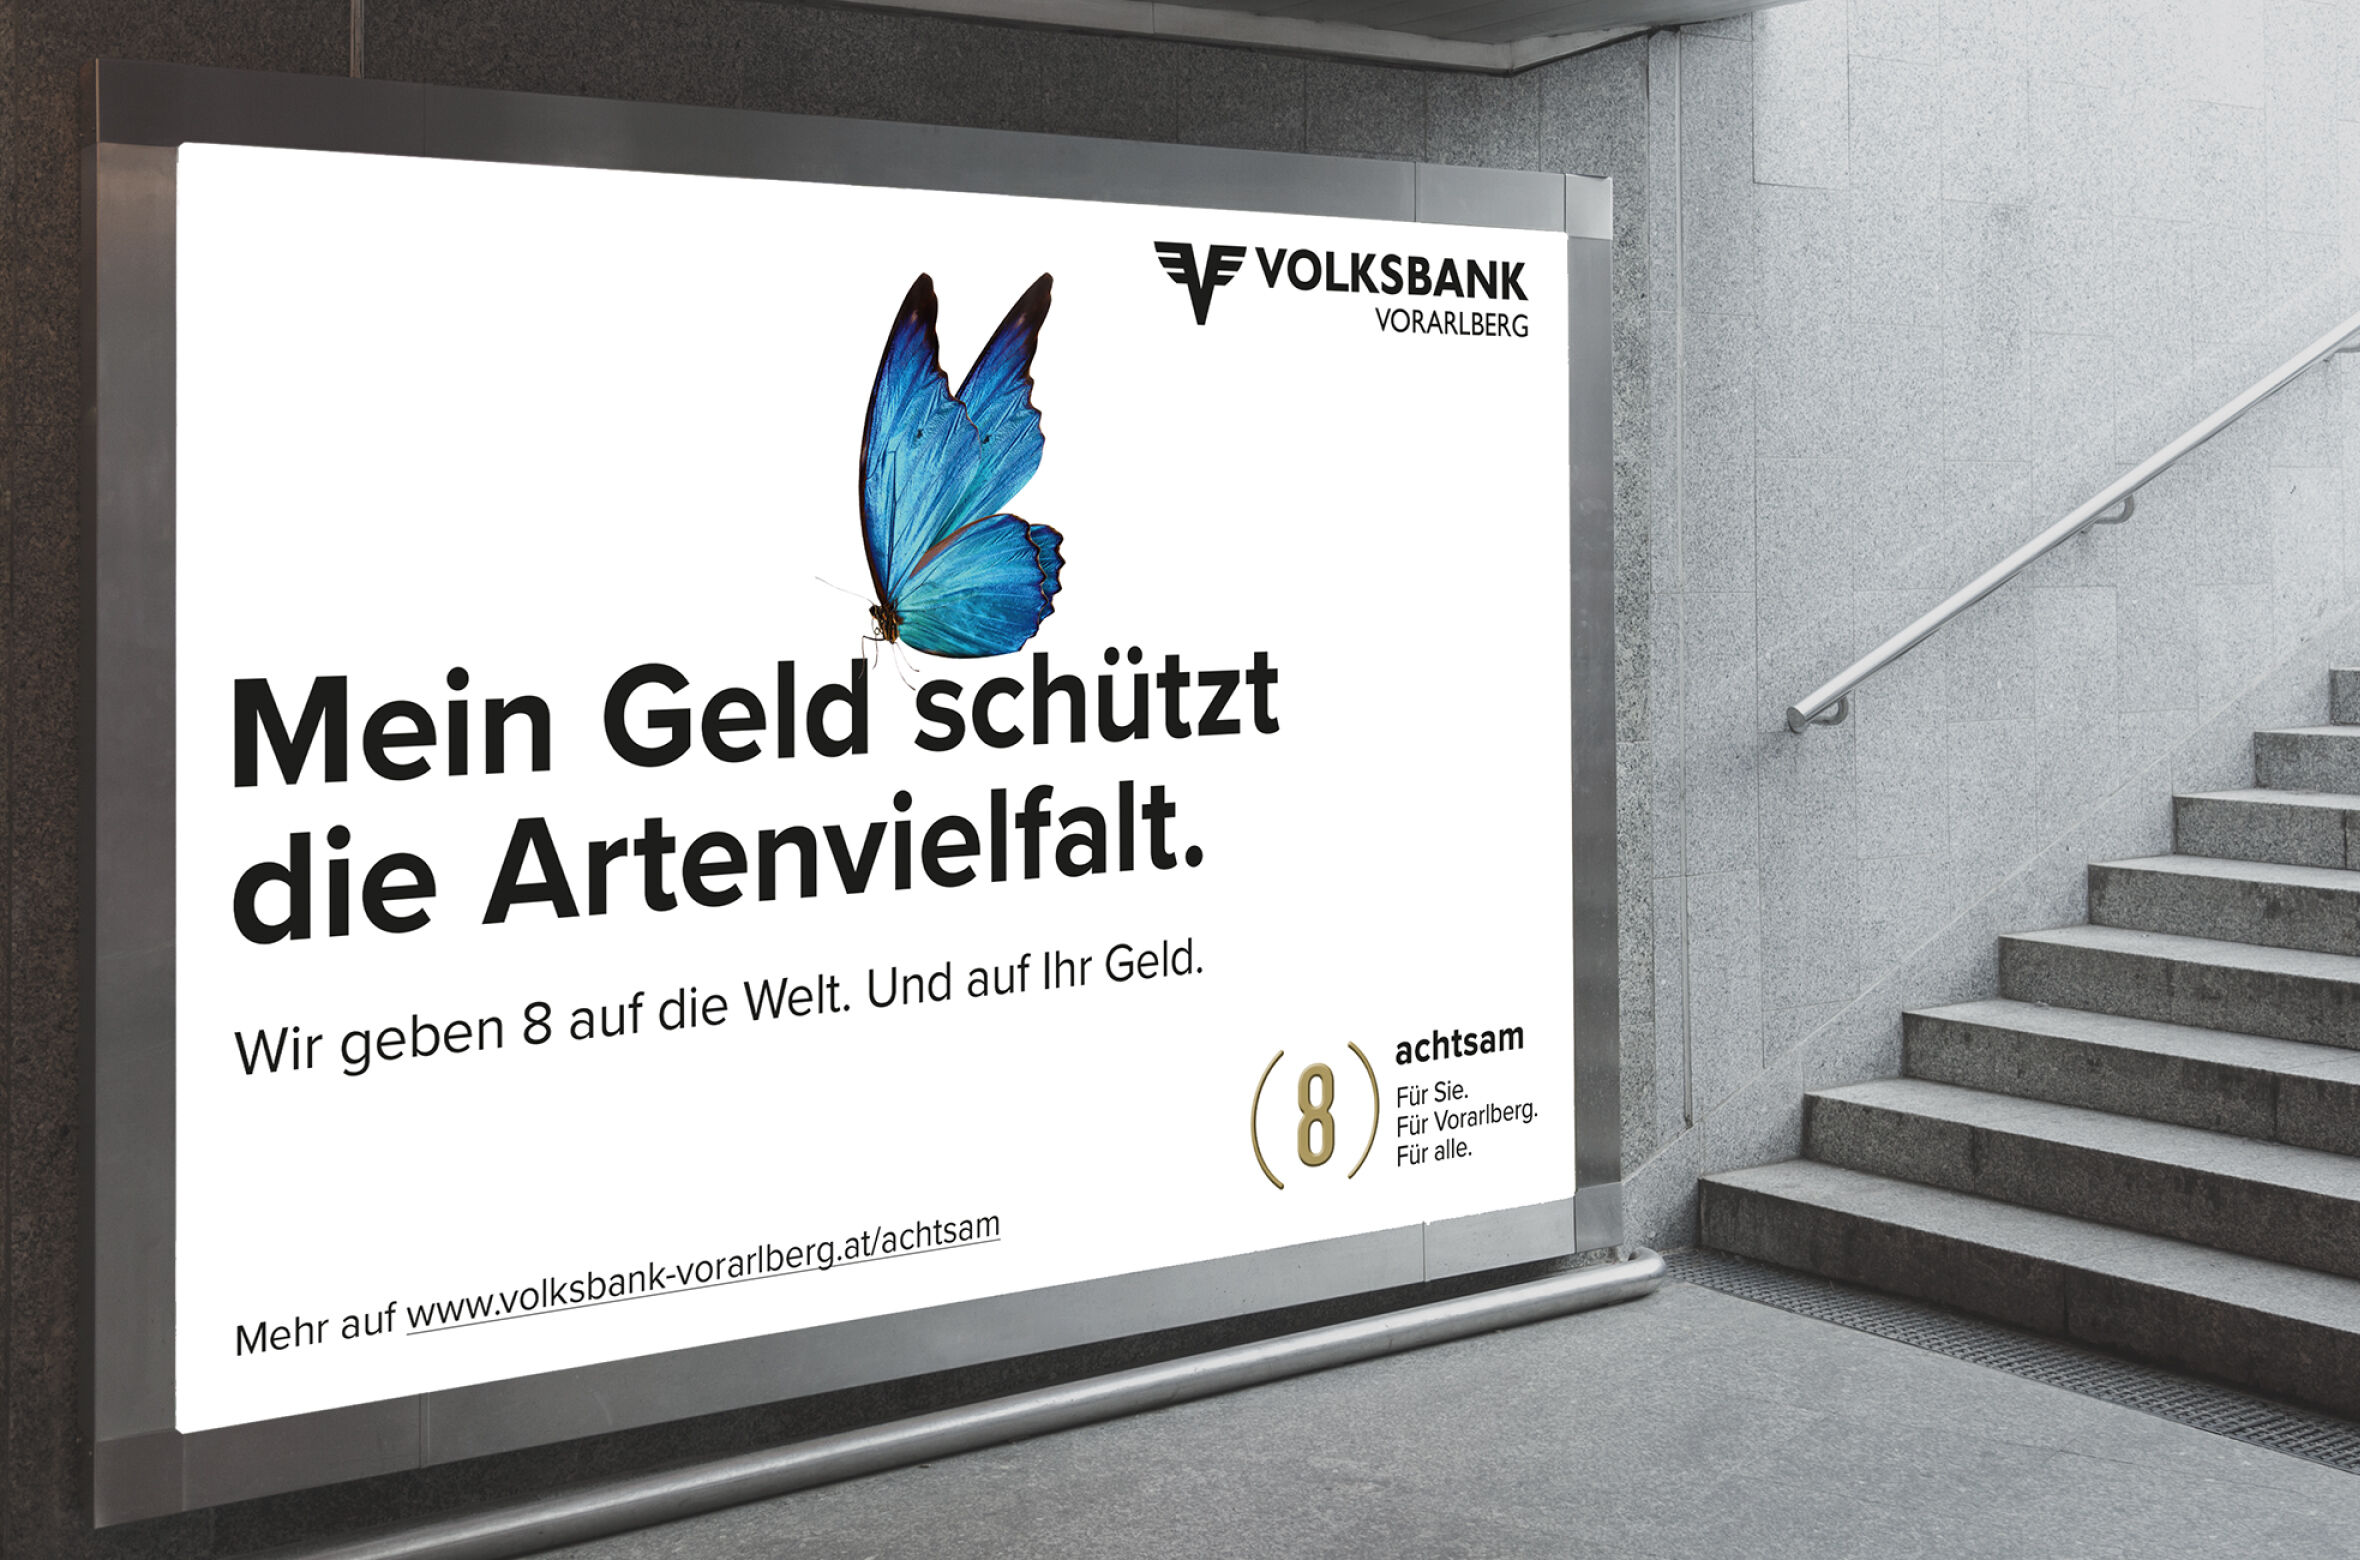 Volksbank_Vorarlberg_Achtsamkeit_Artenvielfalt_©zurgams.jpg